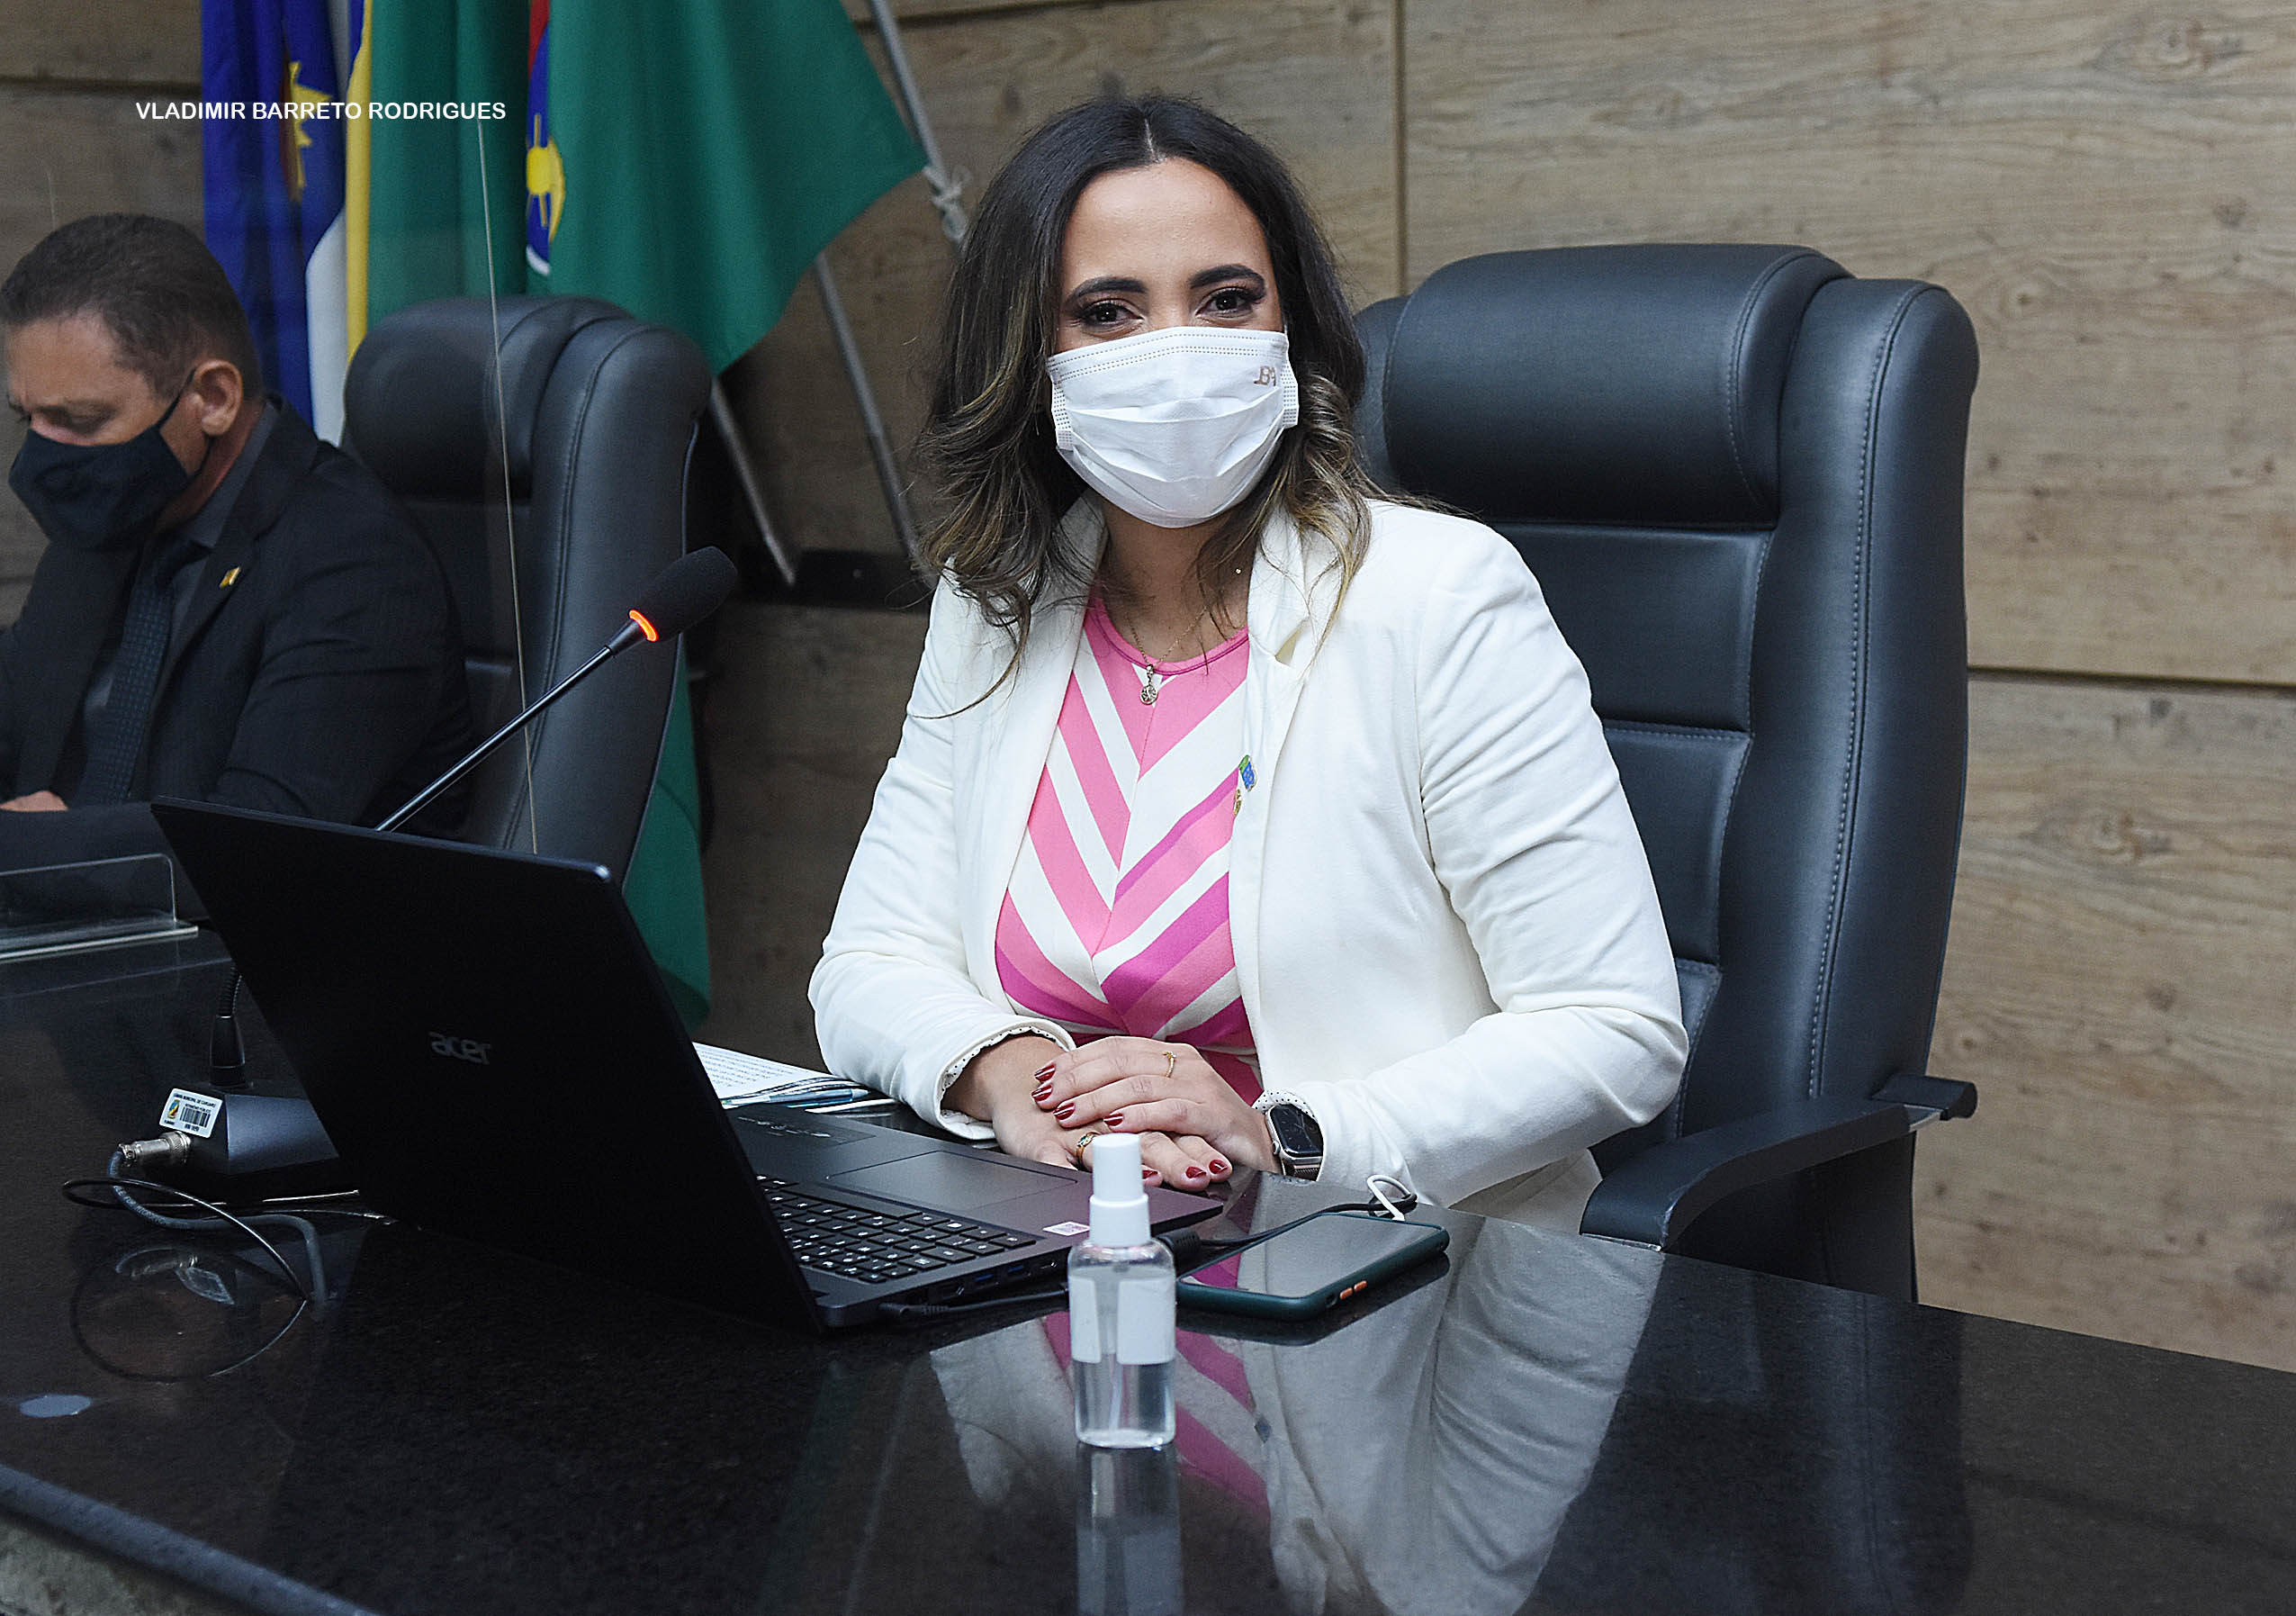 Vereadora assume presidência do Legislativo em homenagem ao Dia Internacional da Mulher 